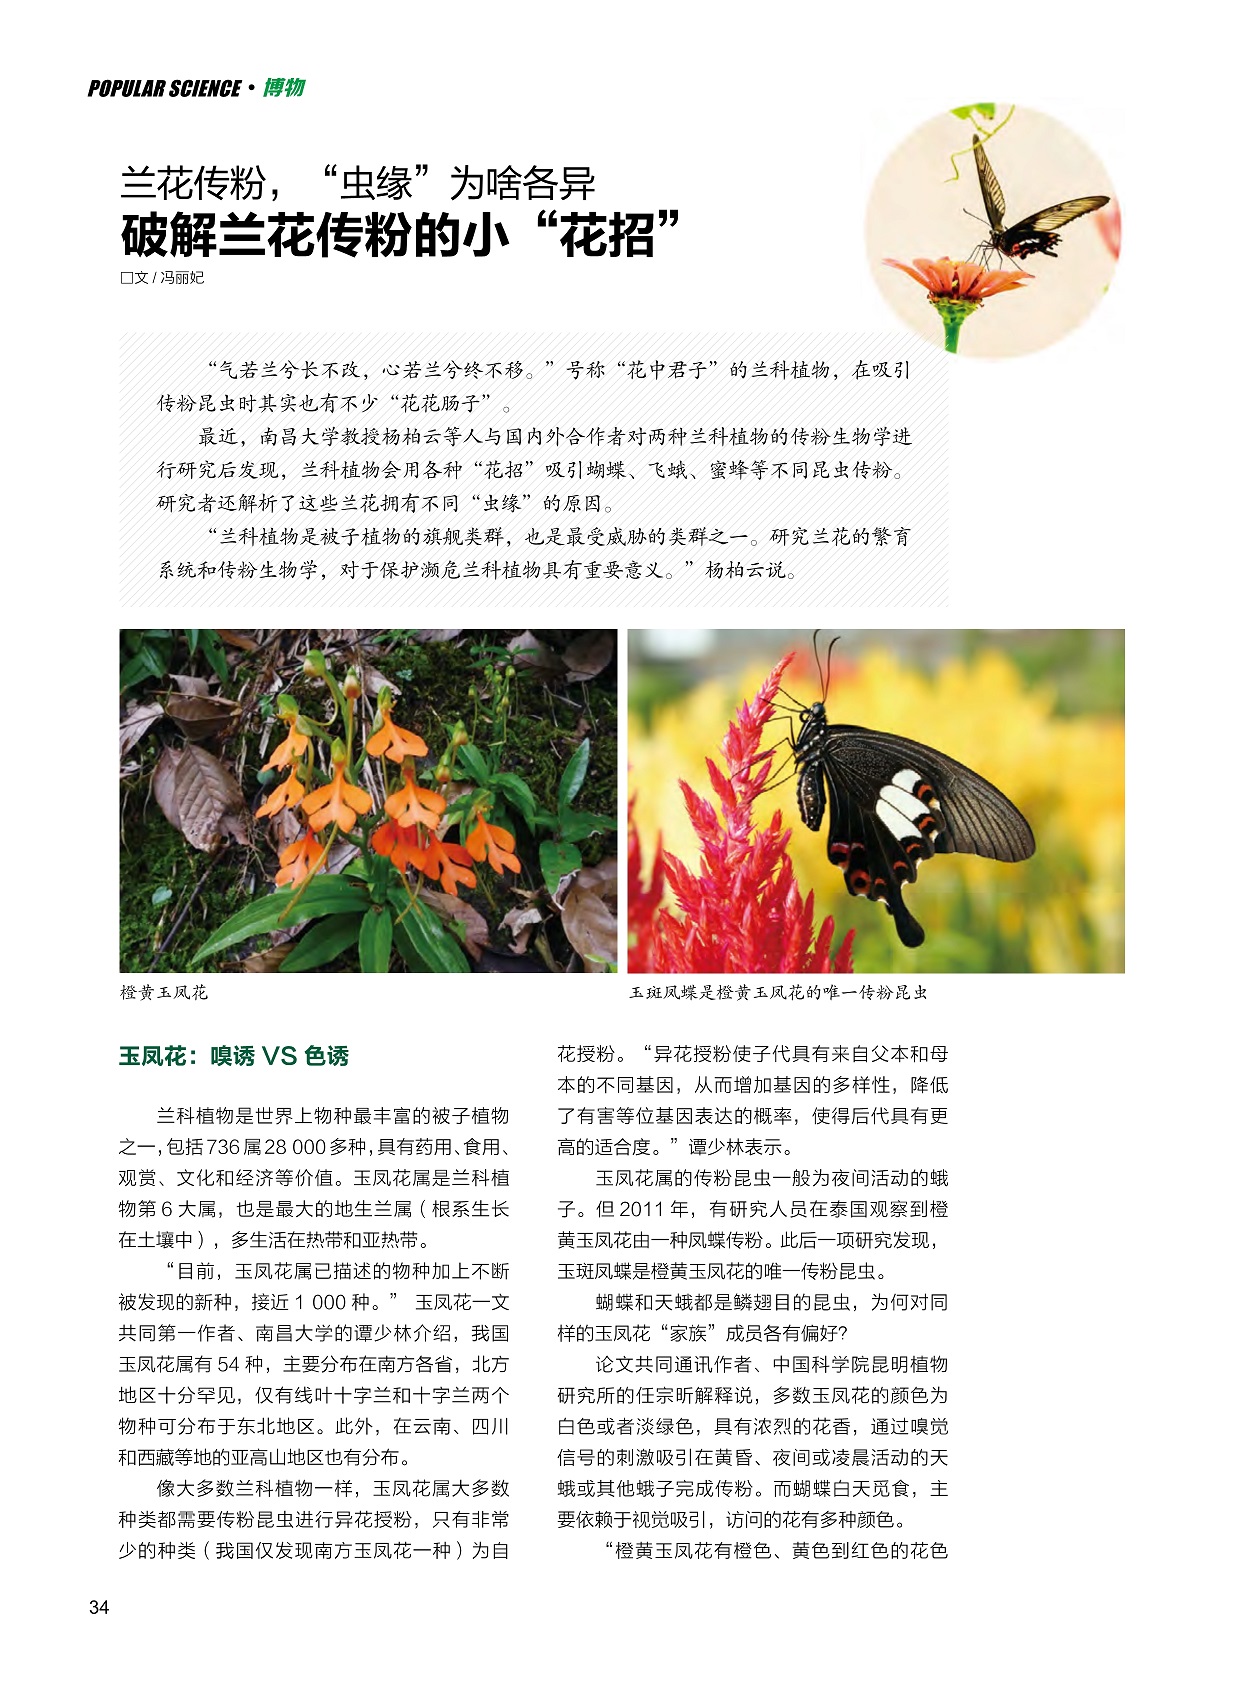 兰科植物是最受威胁的类群之一,研究兰花繁育